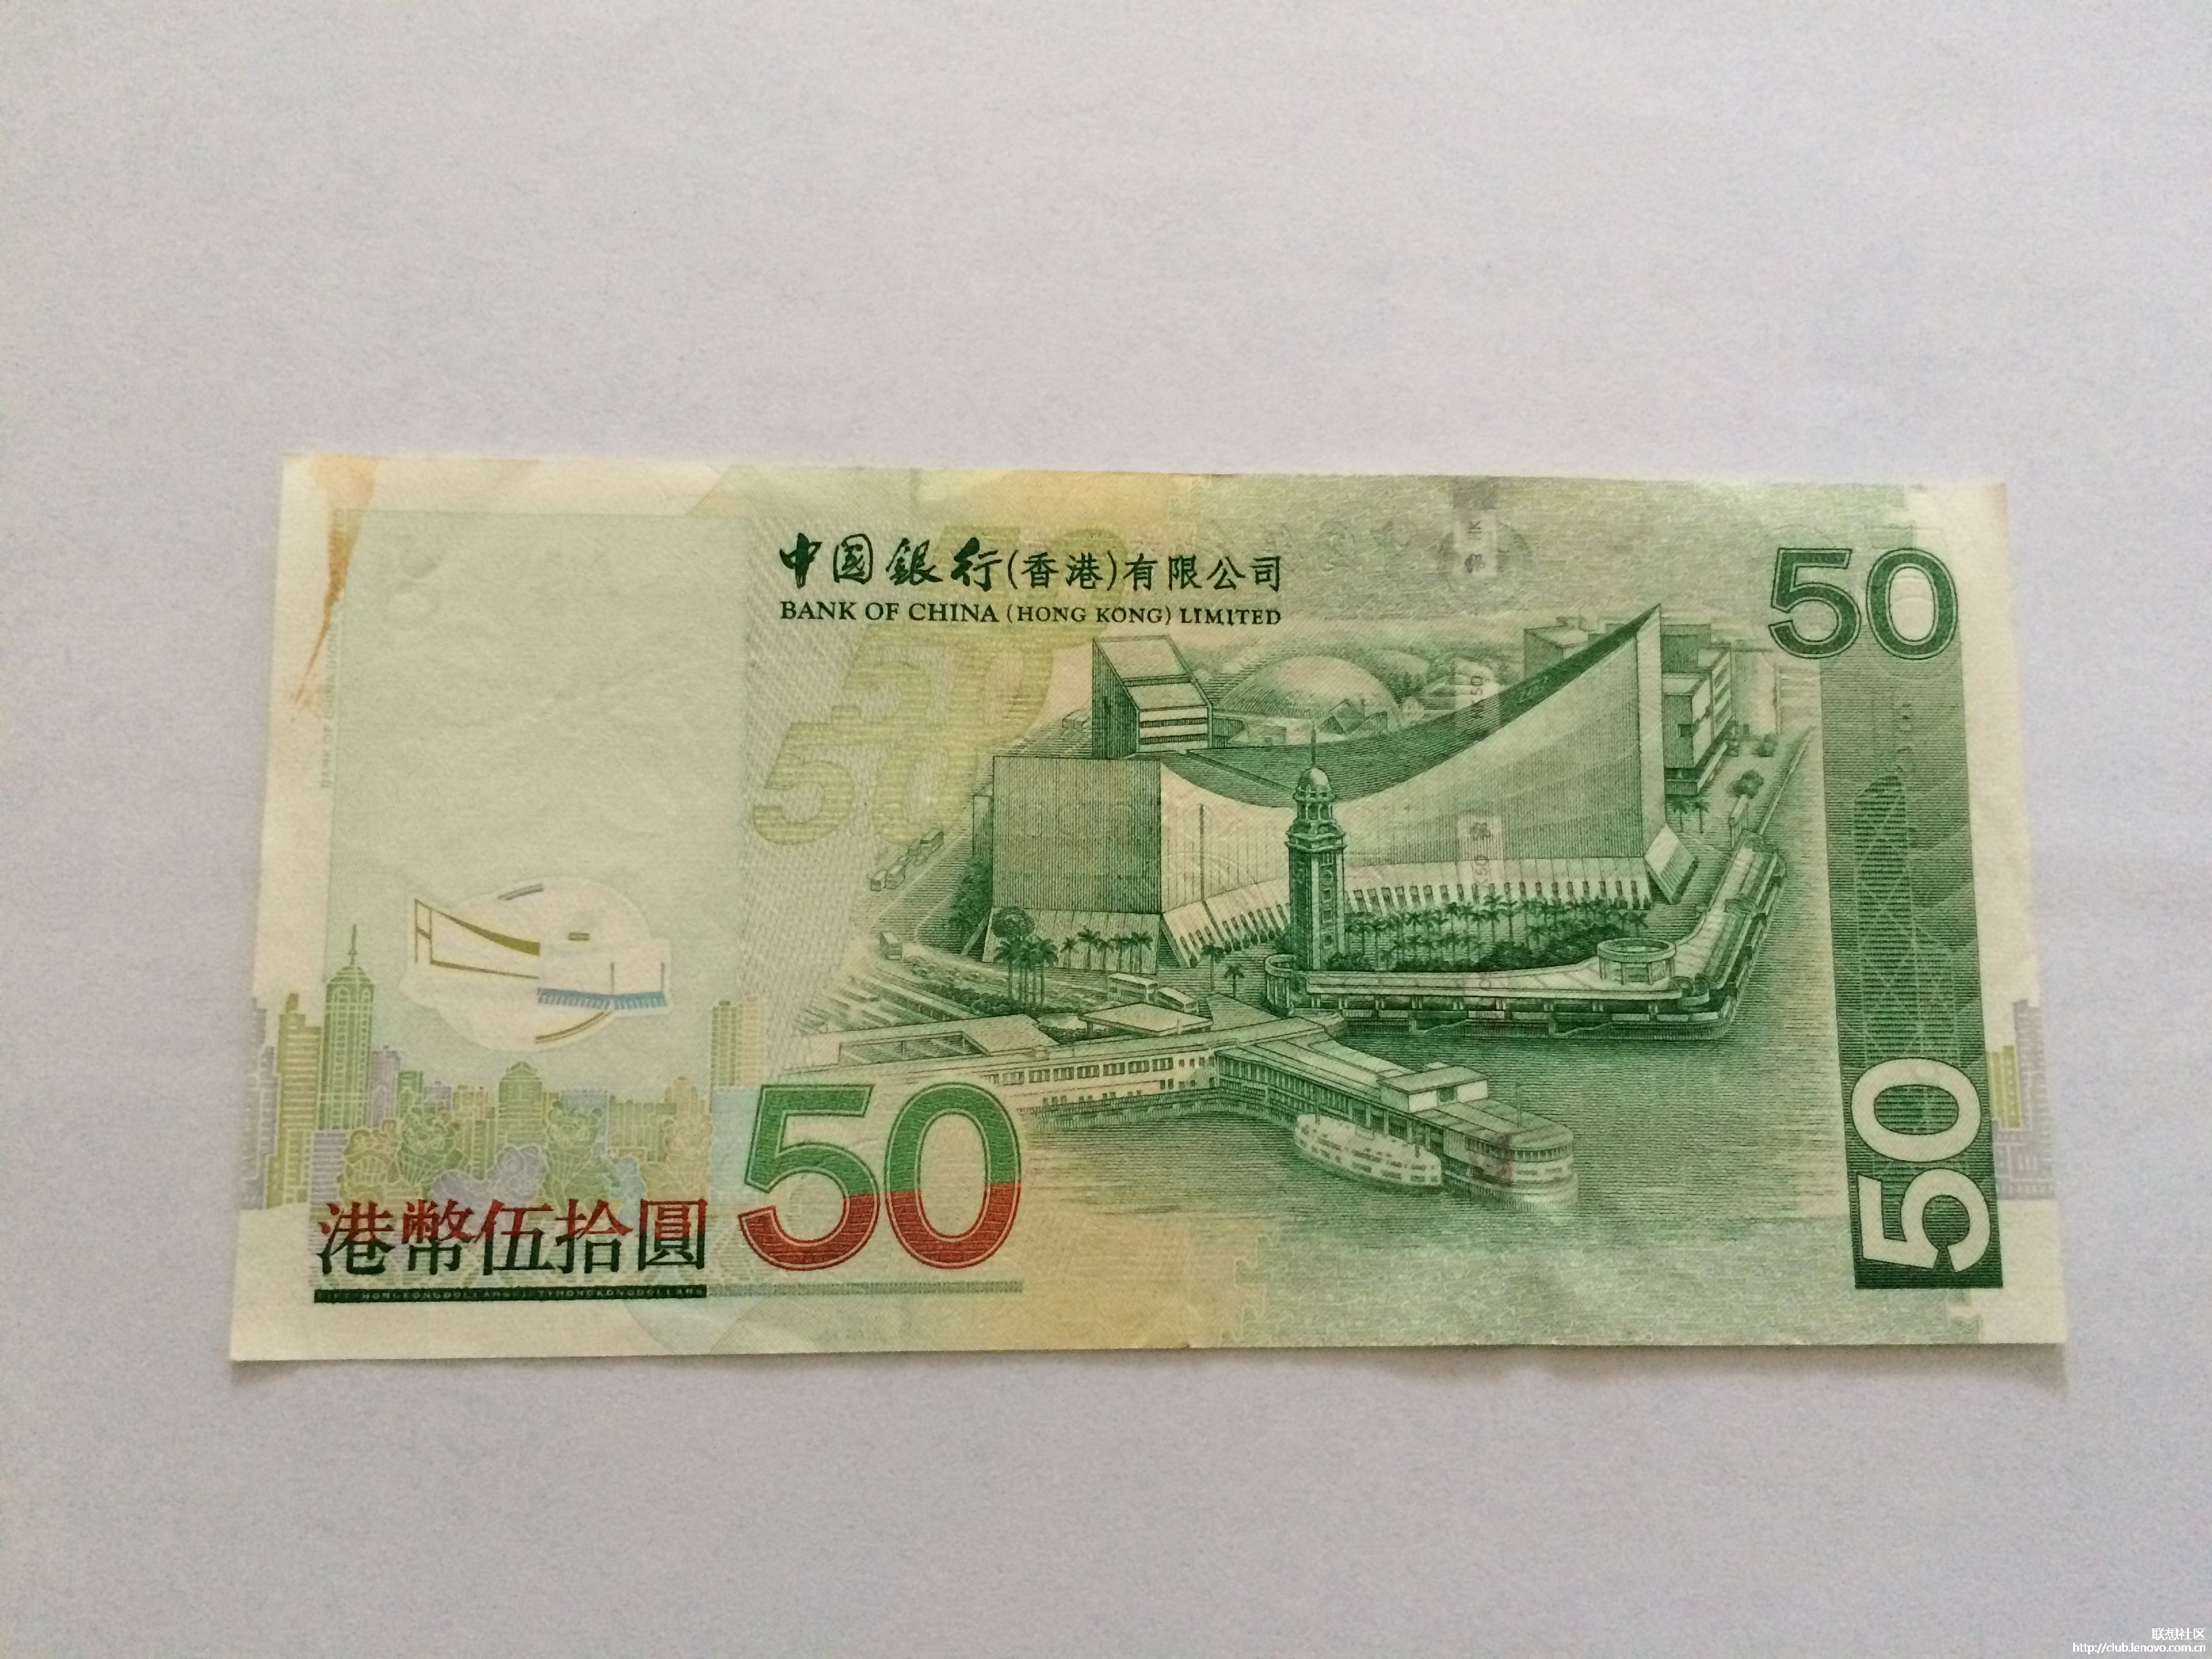 中国银行香港有限公司发行的港币50元面值版(反面)